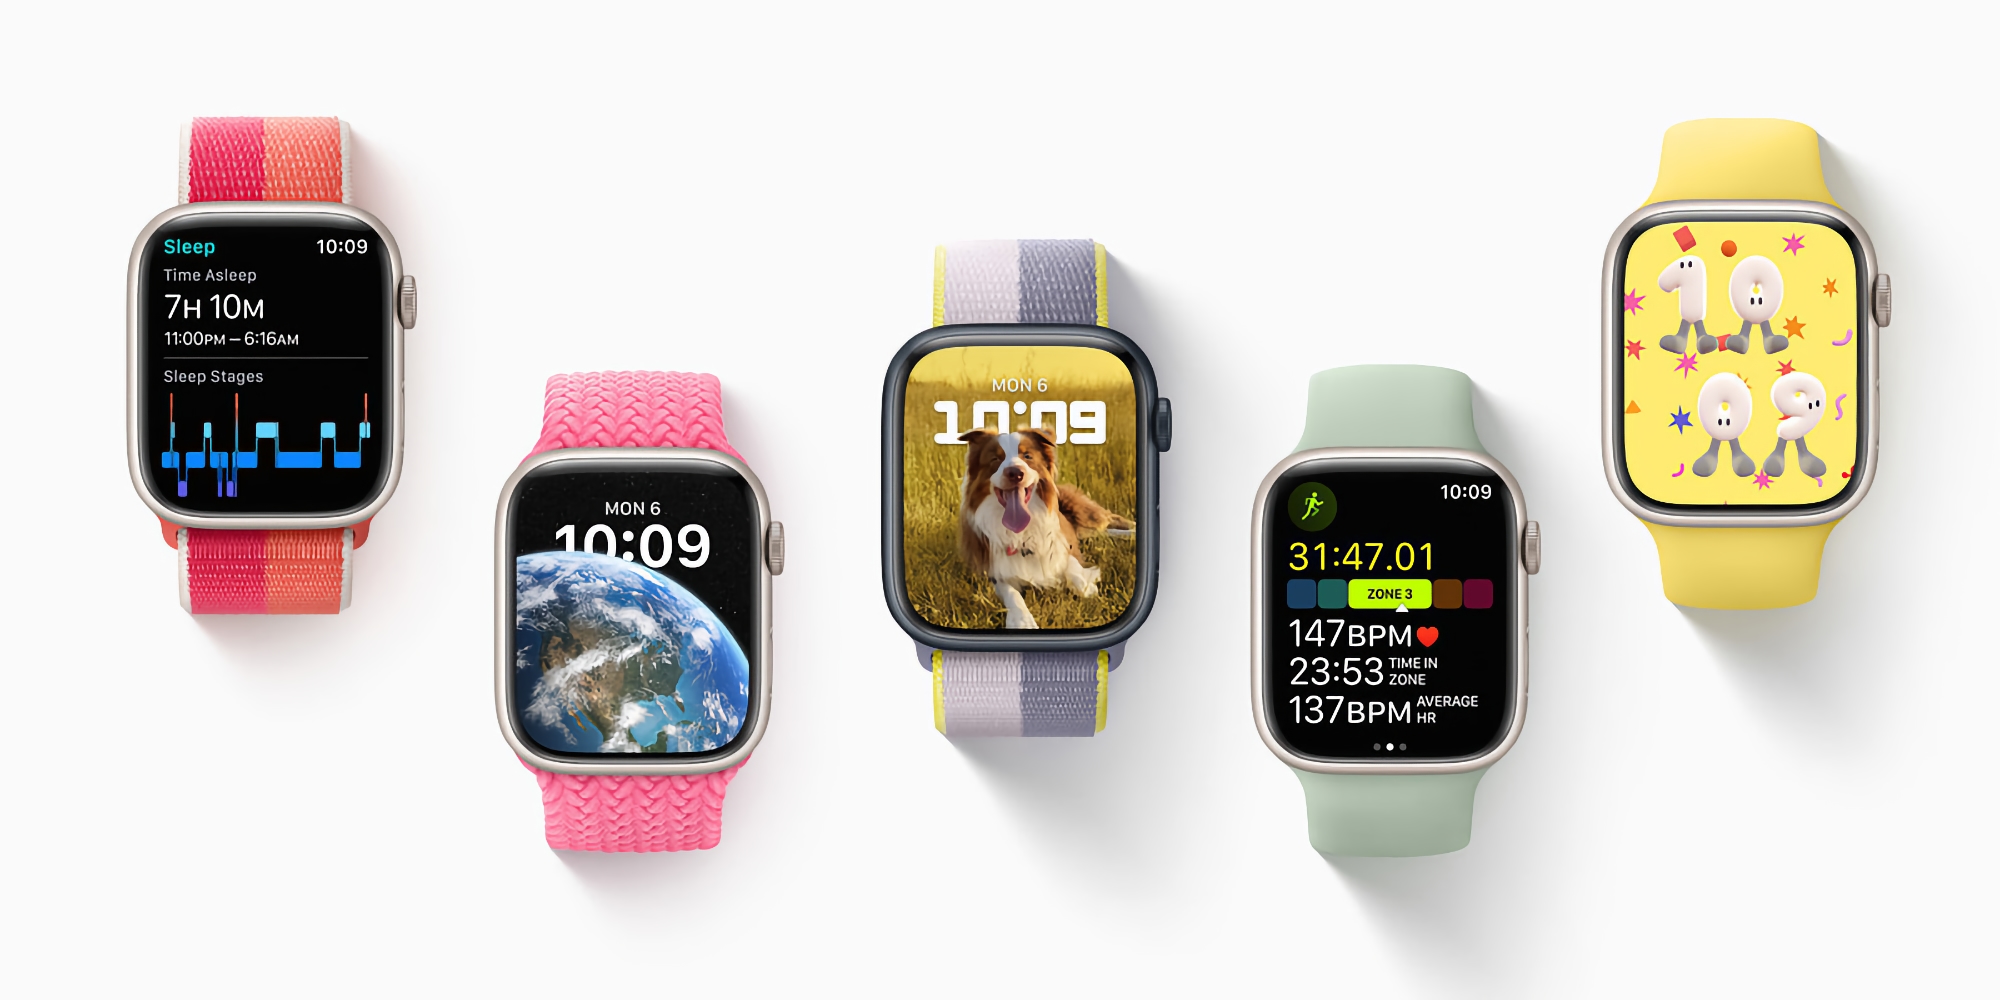 Wydano stabilną wersję watchOS 9 z ulepszonymi funkcjami śledzenia zdrowia i nowymi tarczami zegarków